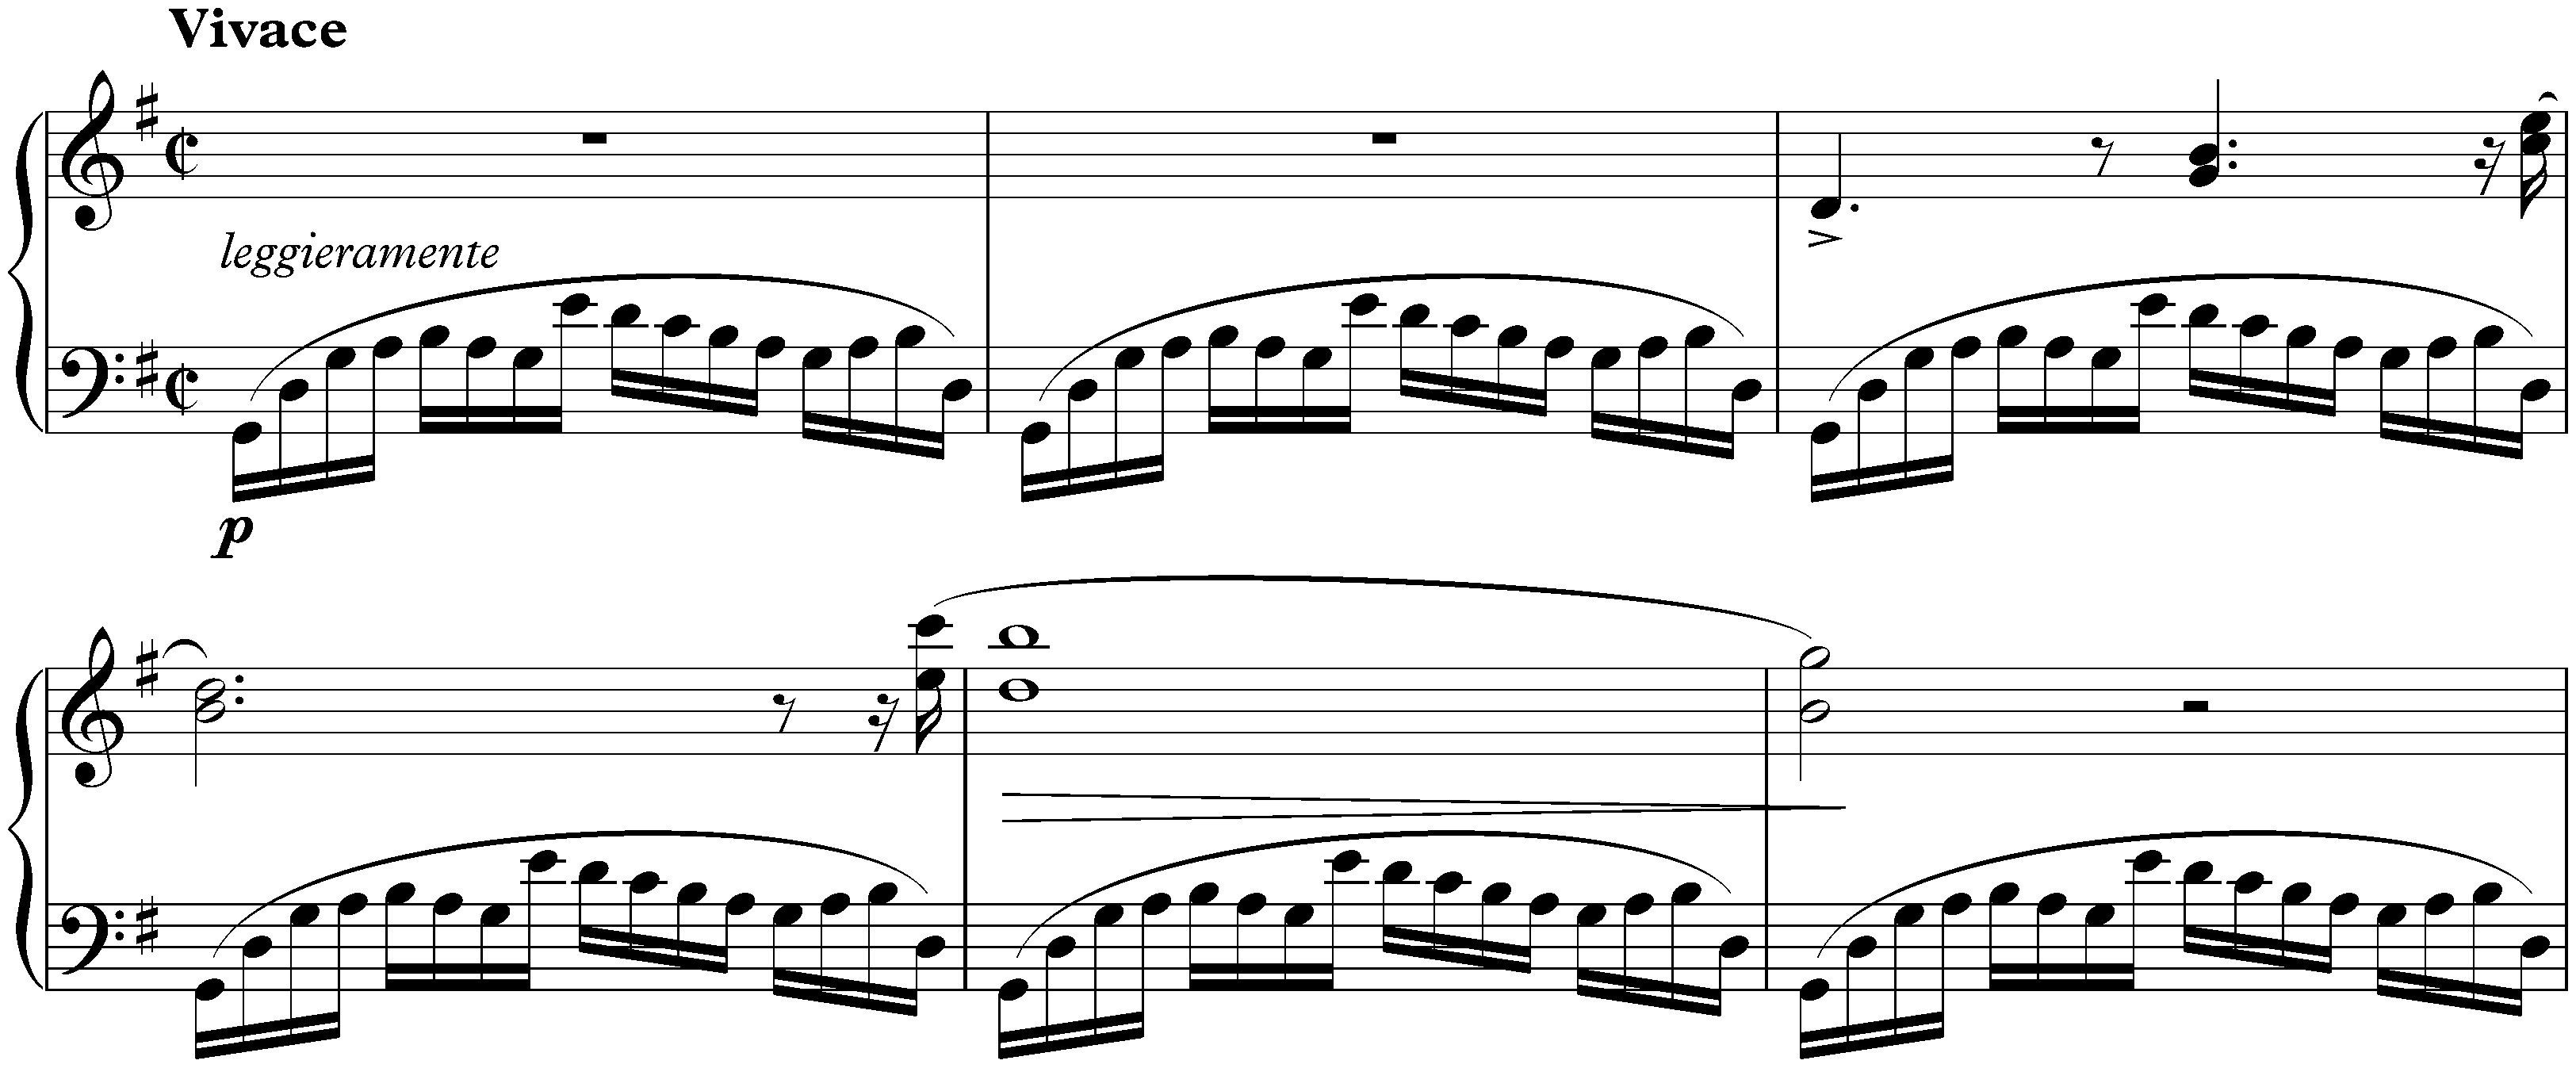 Twenty-four Préludes, op. 28; 3. G major